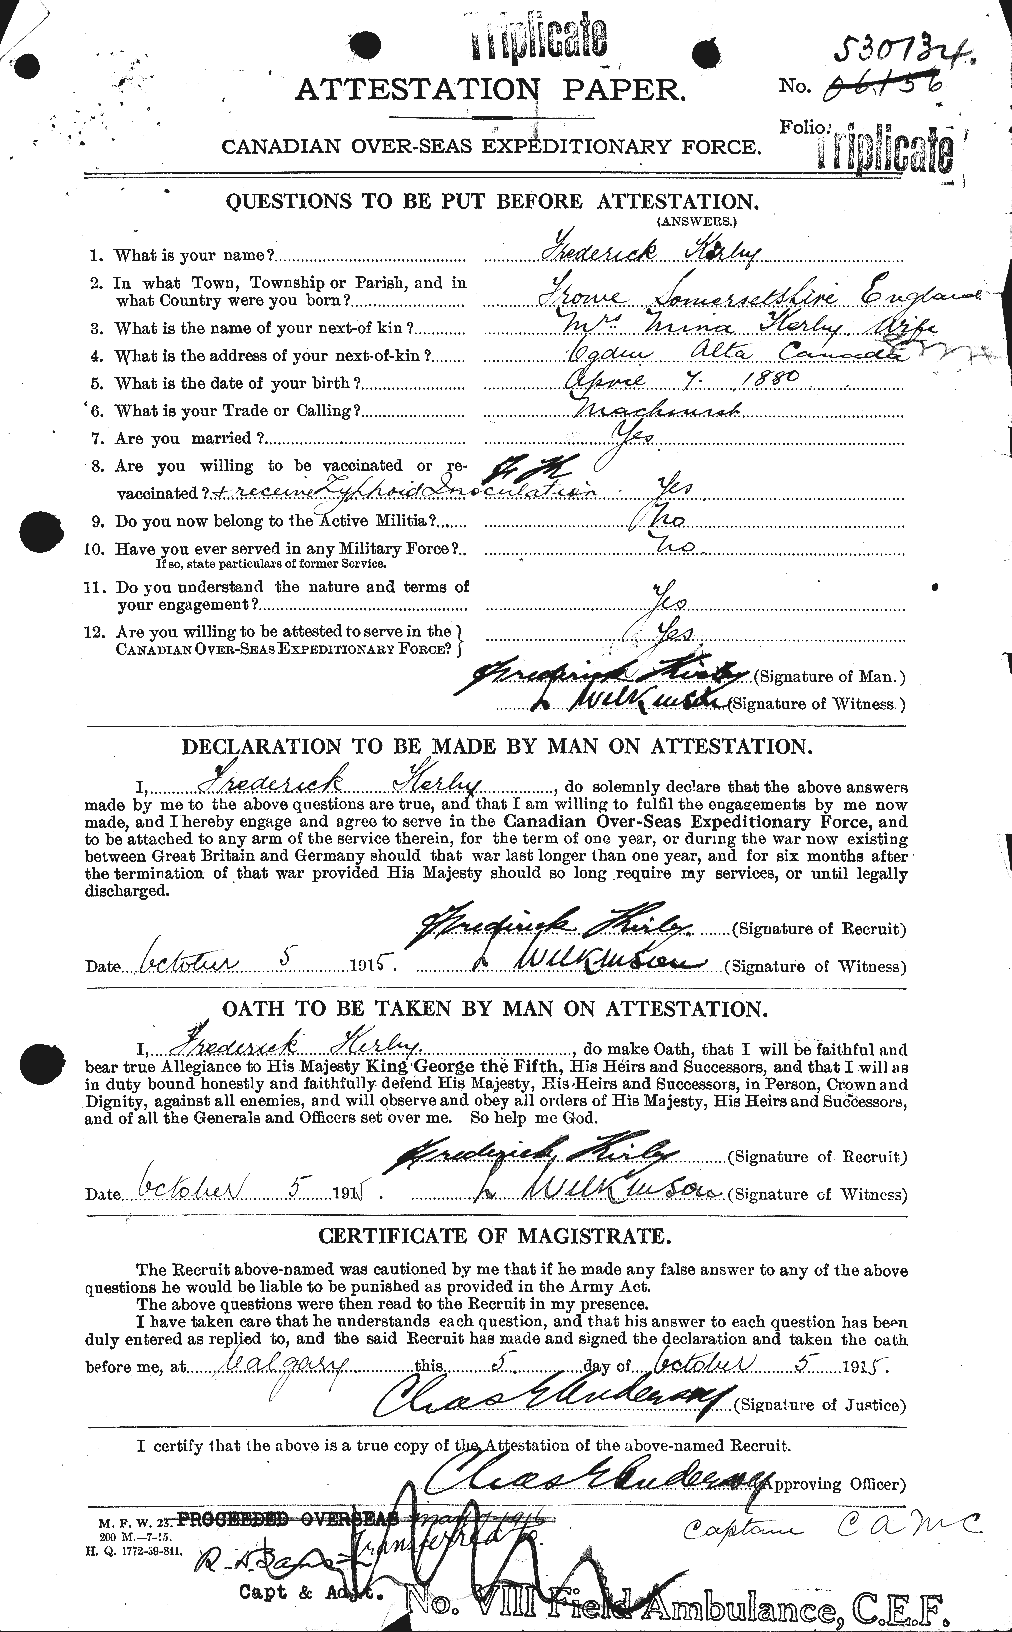 Dossiers du Personnel de la Première Guerre mondiale - CEC 437187a